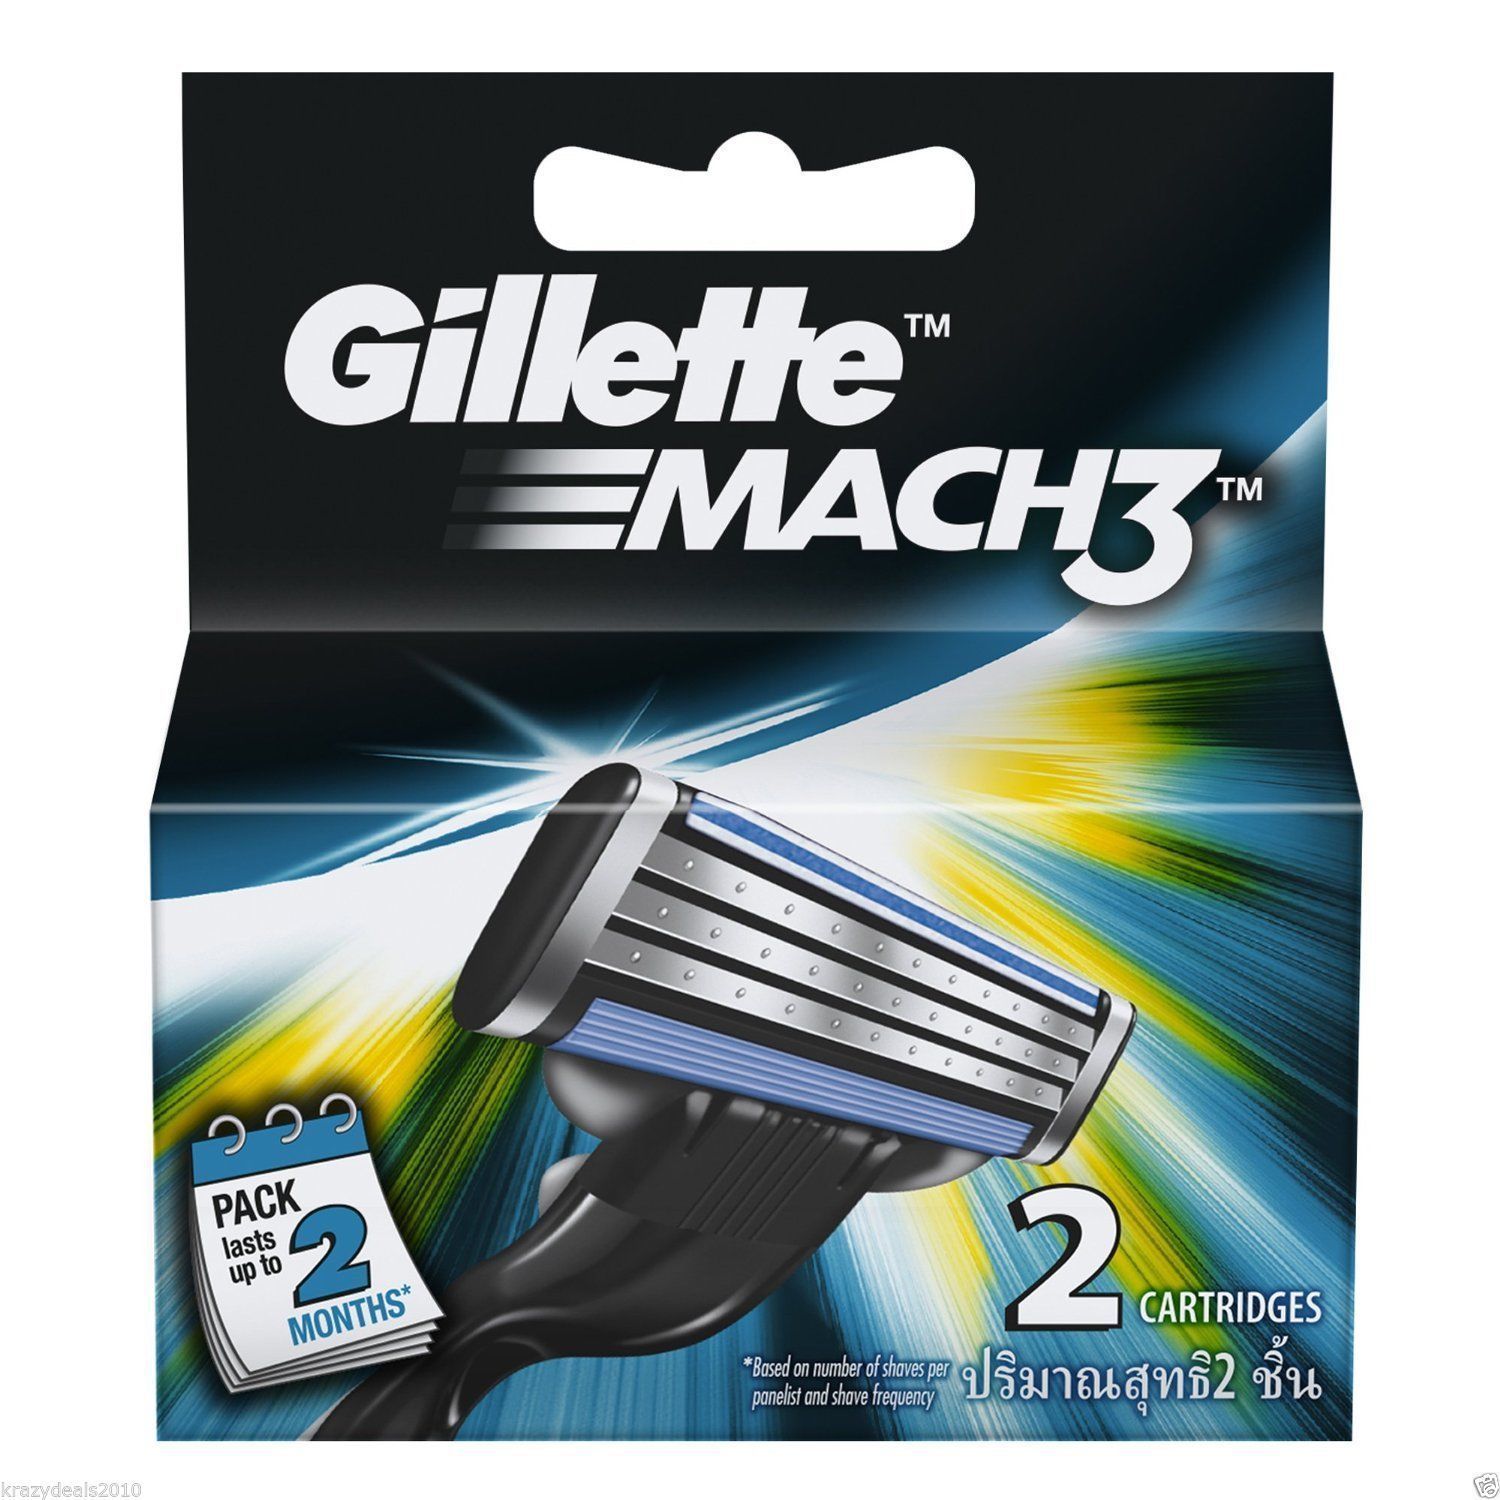 Gillette Mach 3 Mach3 Cartridges Safety Razor Shaving Blades Refill Pack of 2 - $8.99